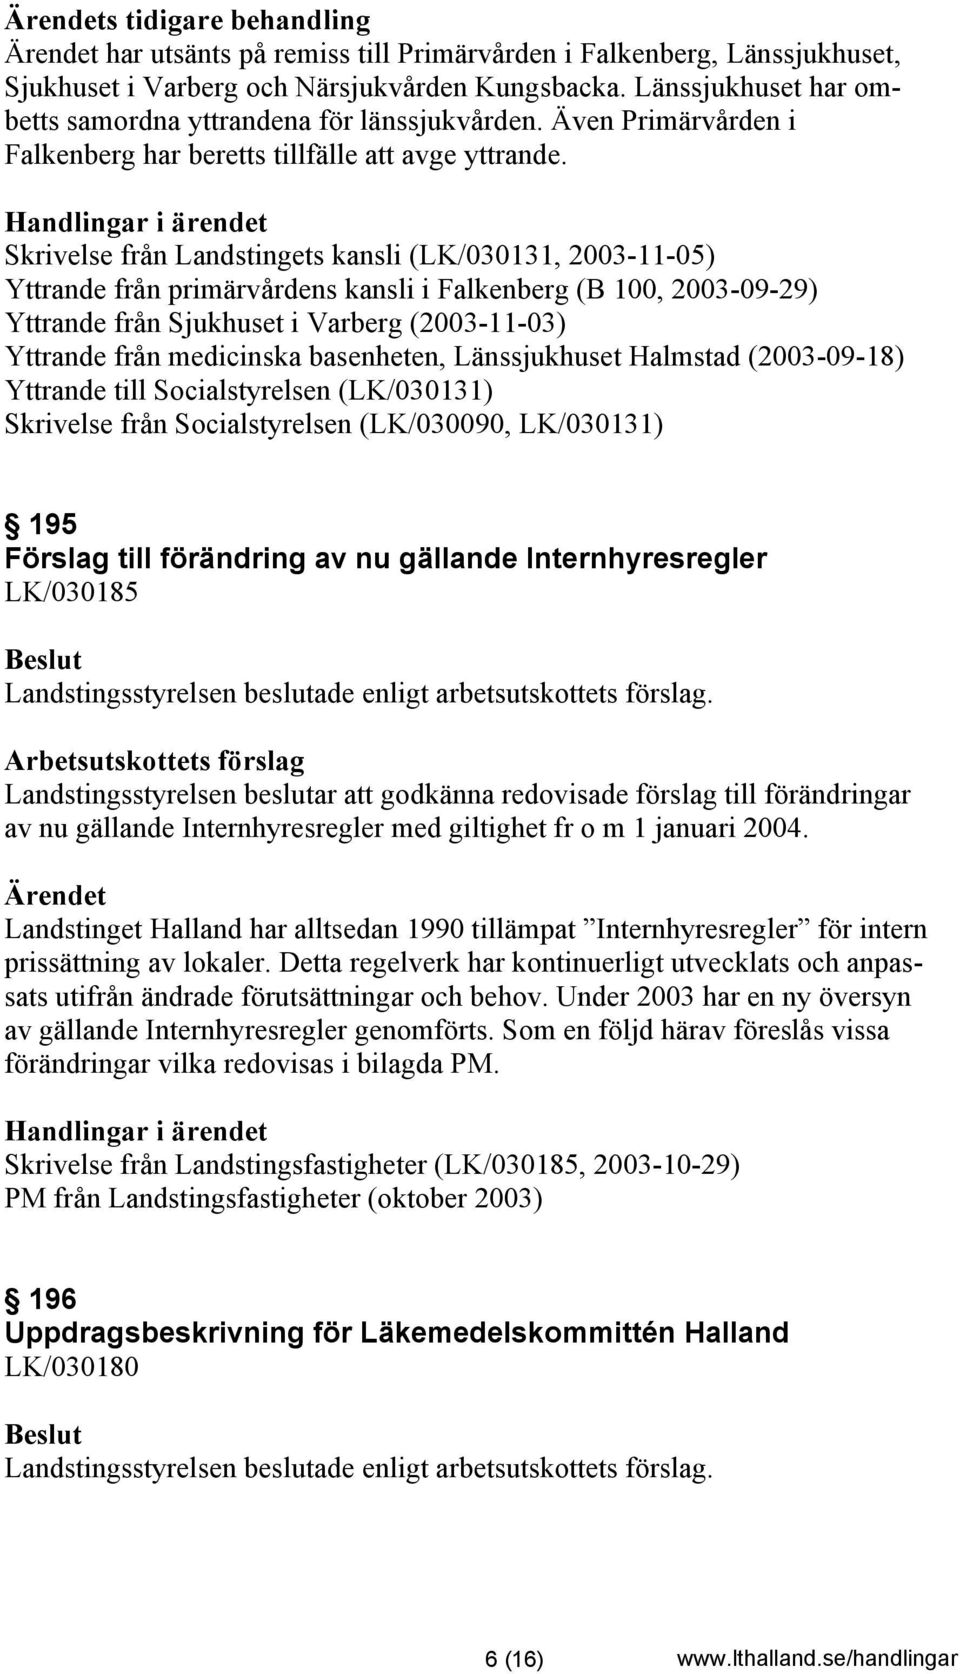 Skrivelse från Landstingets kansli (LK/030131, 2003-11-05) Yttrande från primärvårdens kansli i Falkenberg (B 100, 2003-09-29) Yttrande från Sjukhuset i Varberg (2003-11-03) Yttrande från medicinska